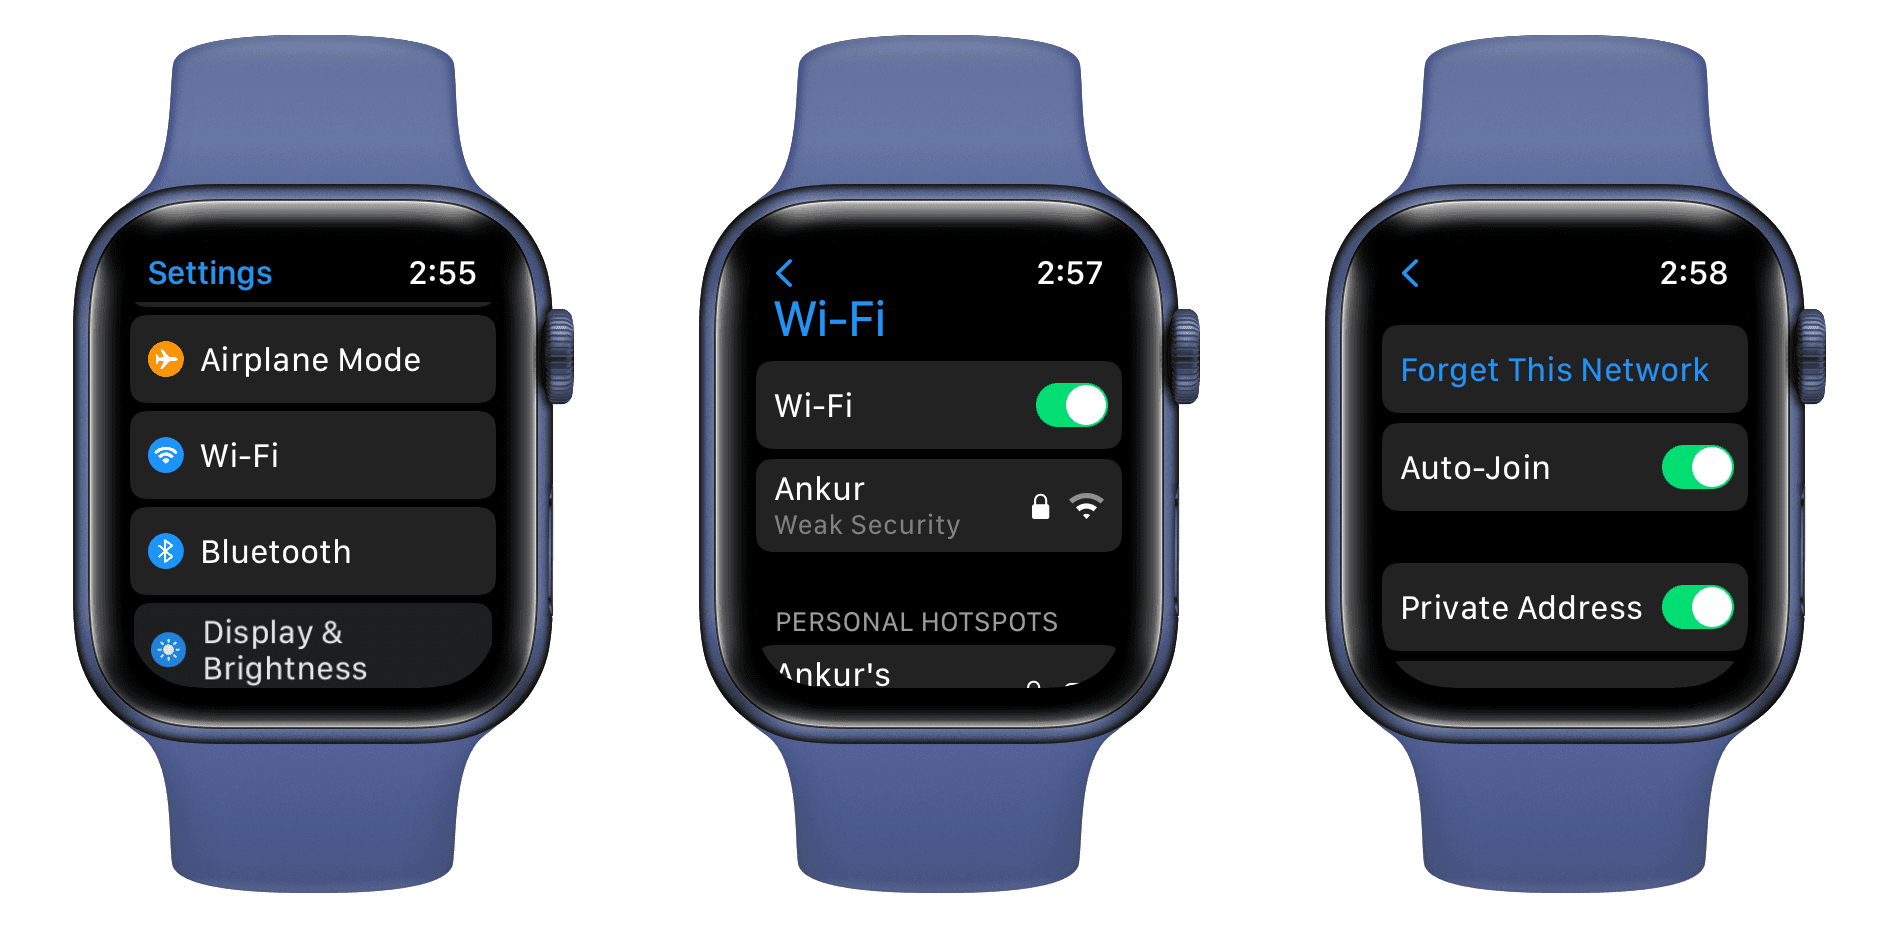 Wi-Fi Settings on Apple Watch